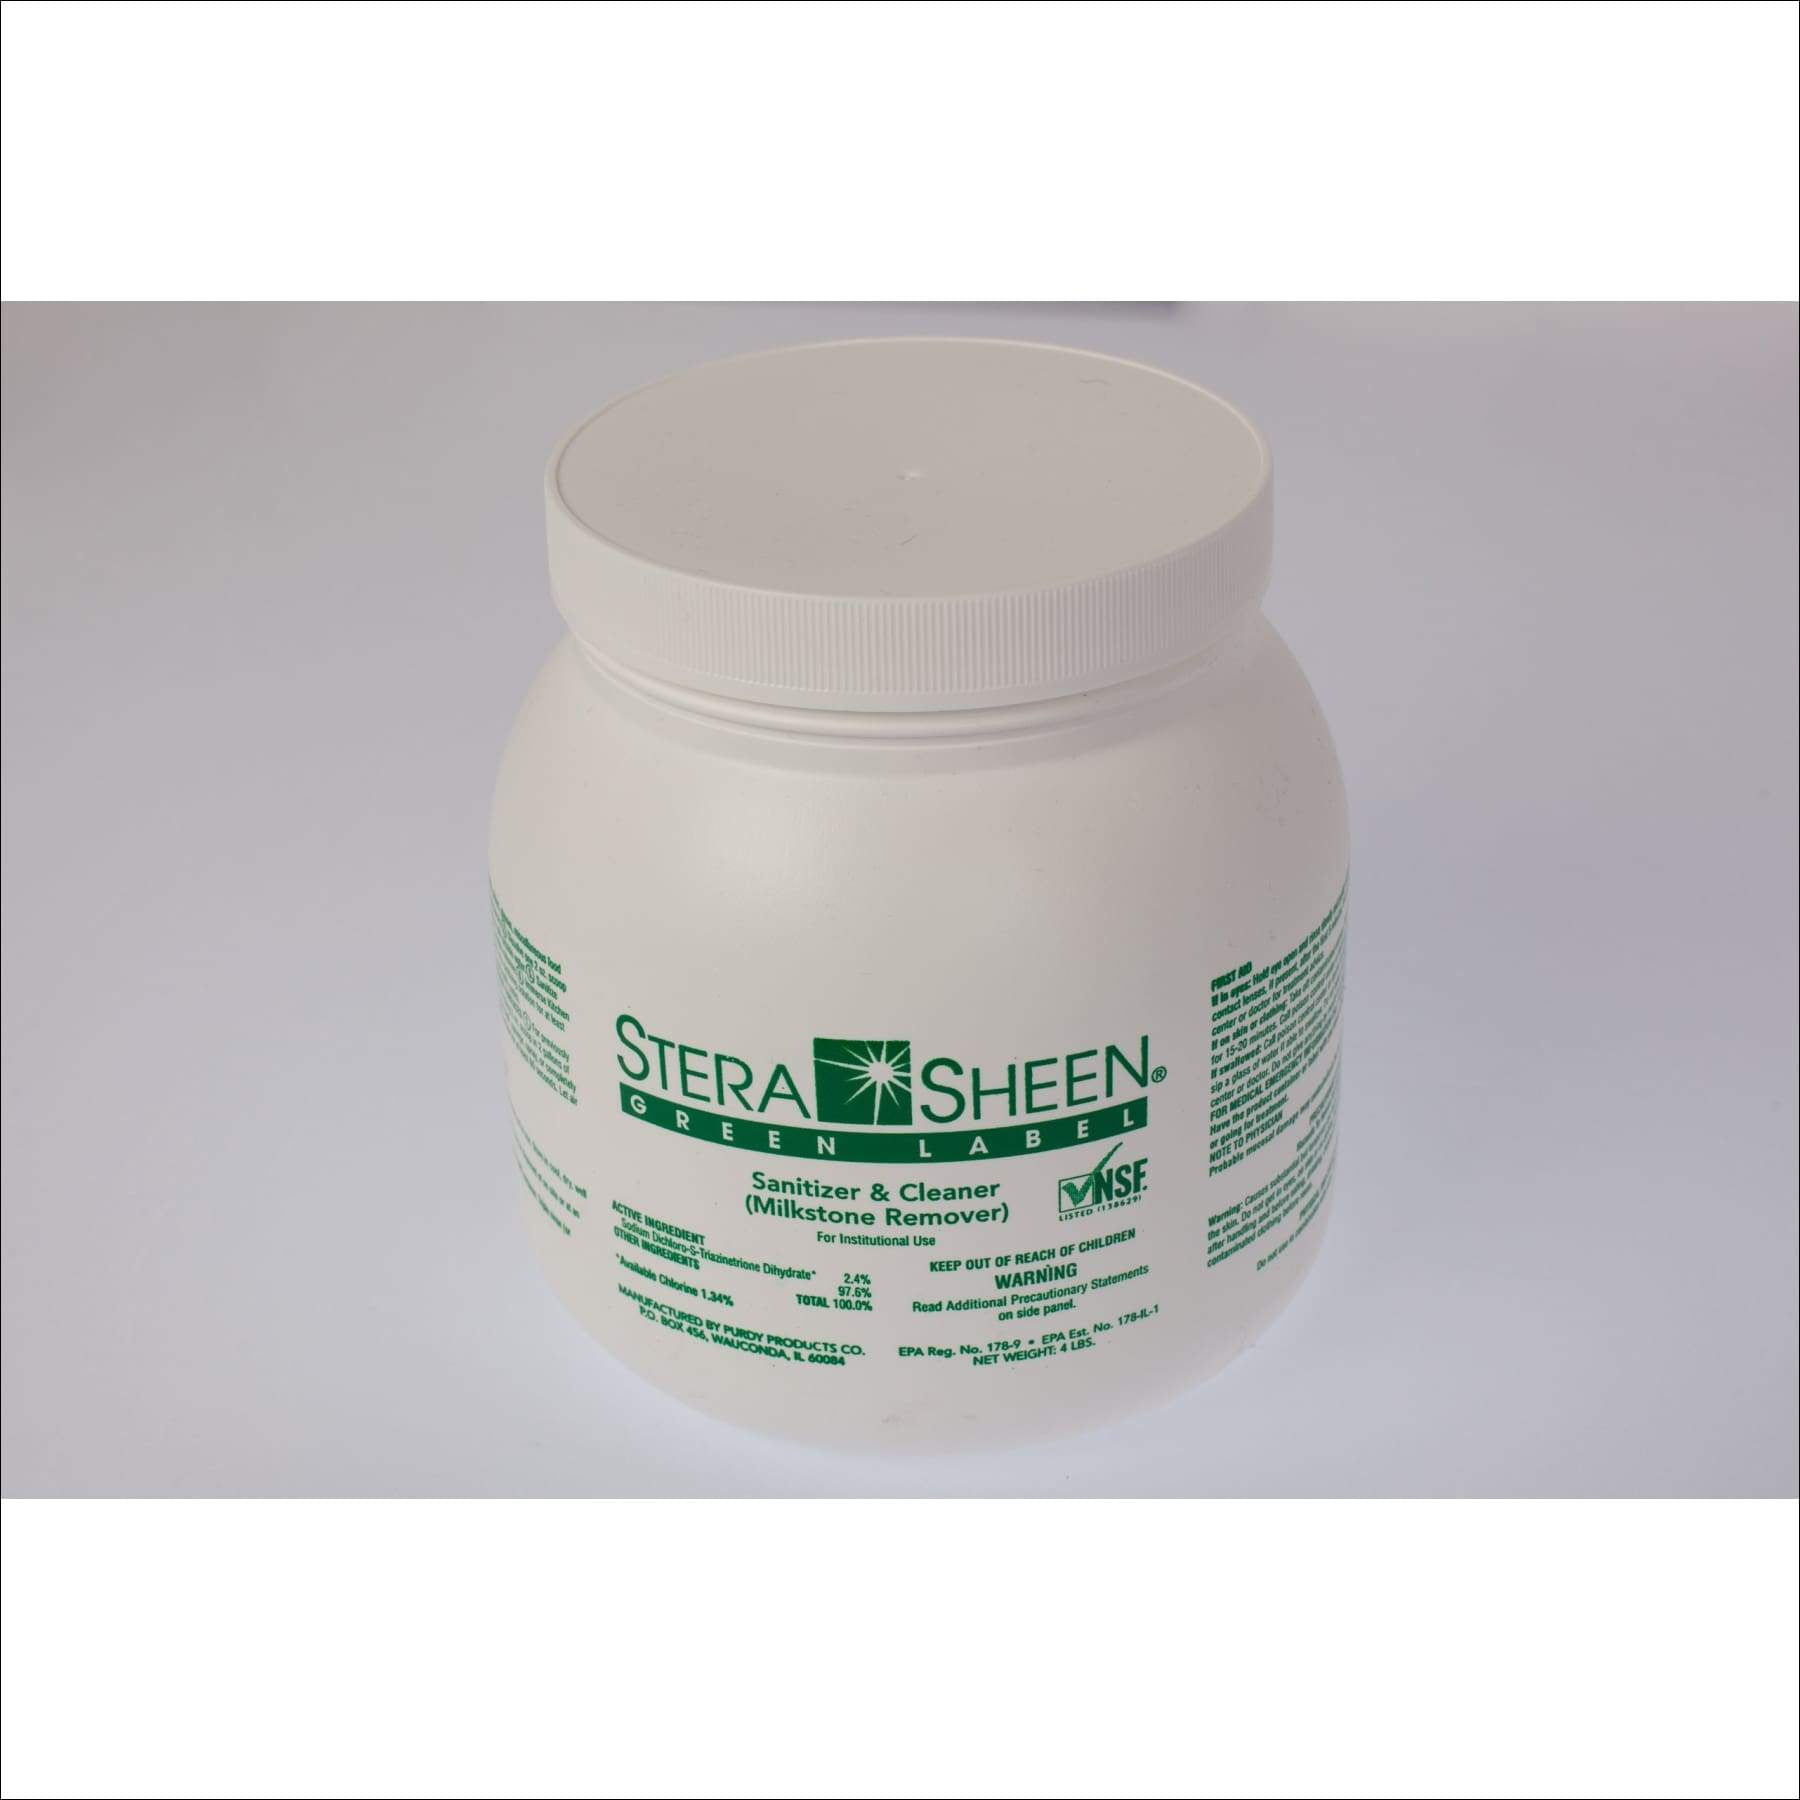 Purdy Stera-Sheen Green Label Sanitizer 4lb Jar 